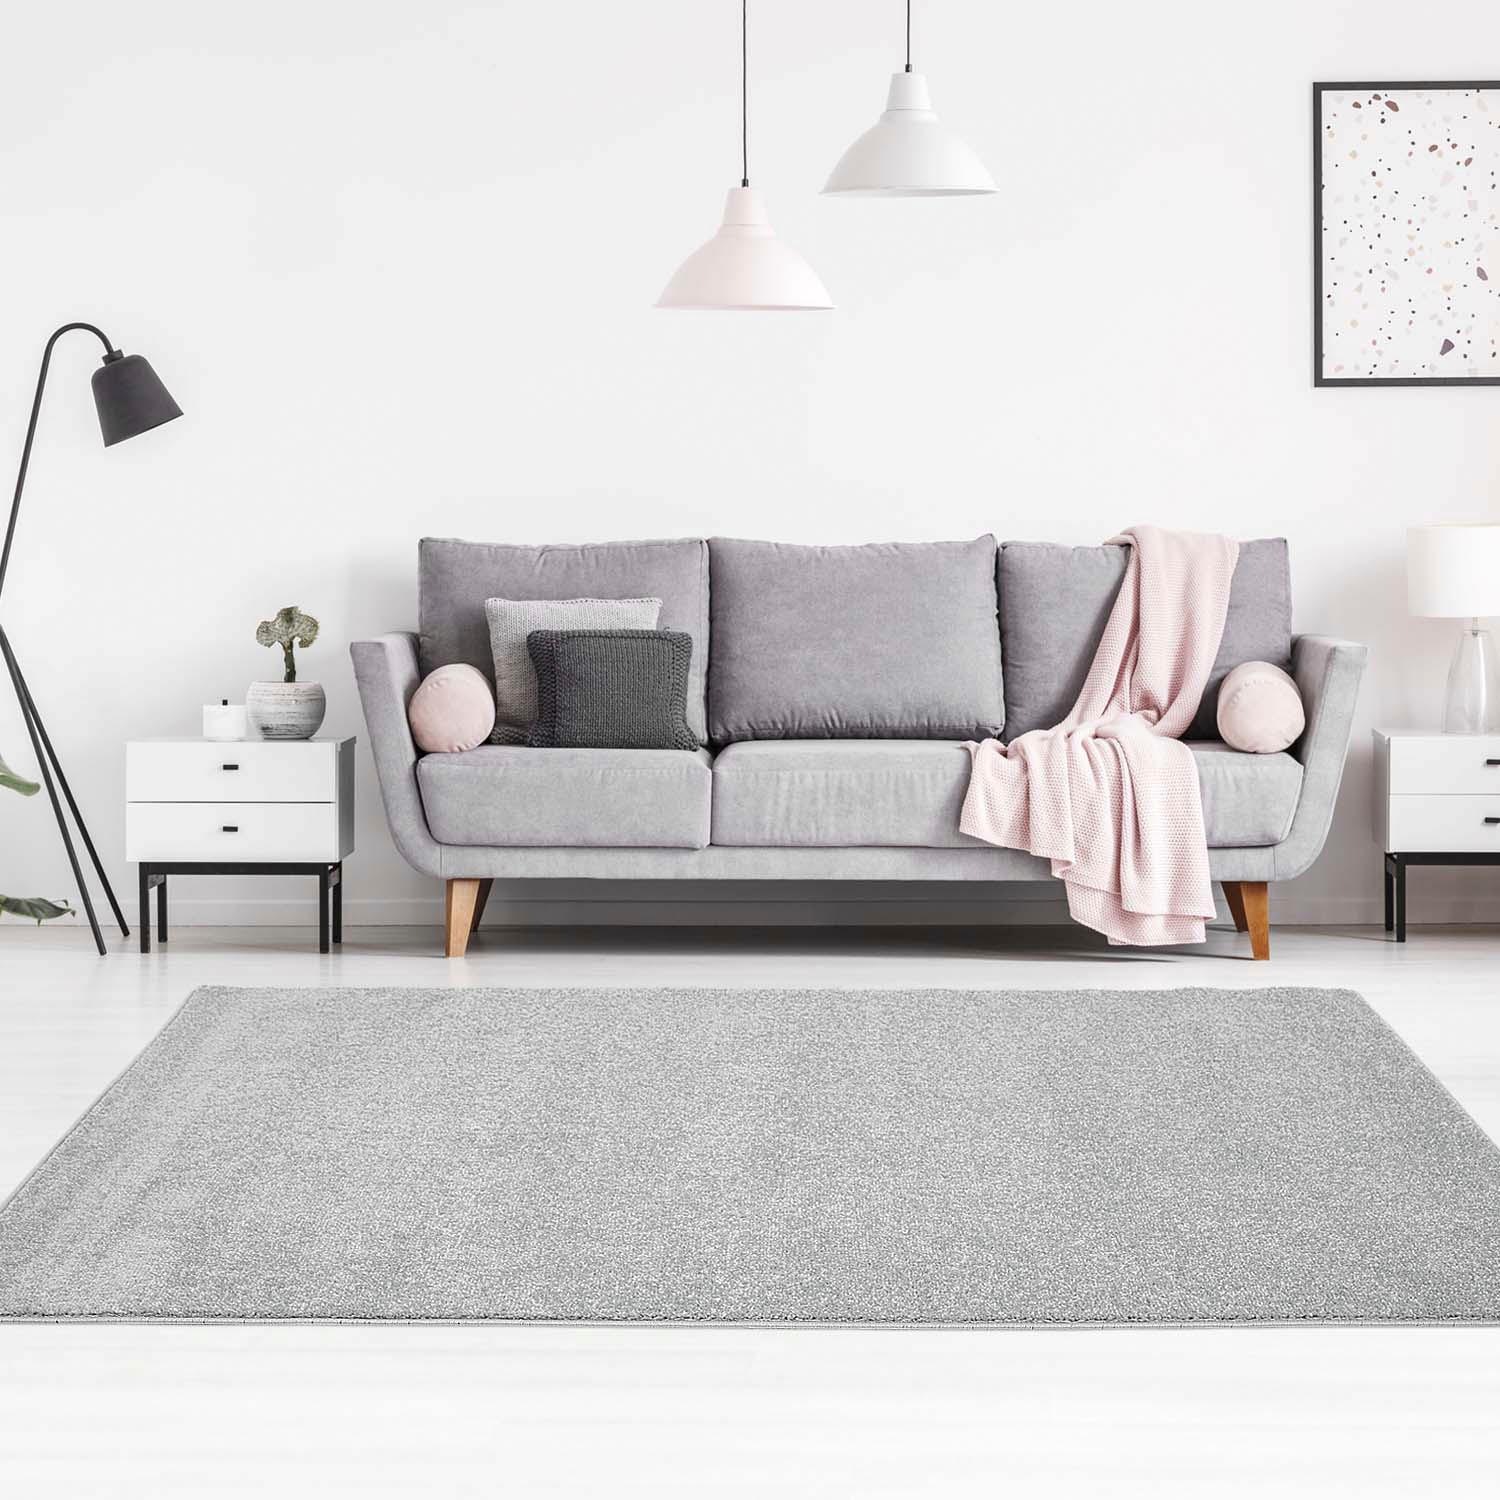 carpet city Teppich-Läufer Einfarbig Uni Flachfor Soft & Shiny in Grau/Silber für Wohnzimmer; Größe: 80x150 cm